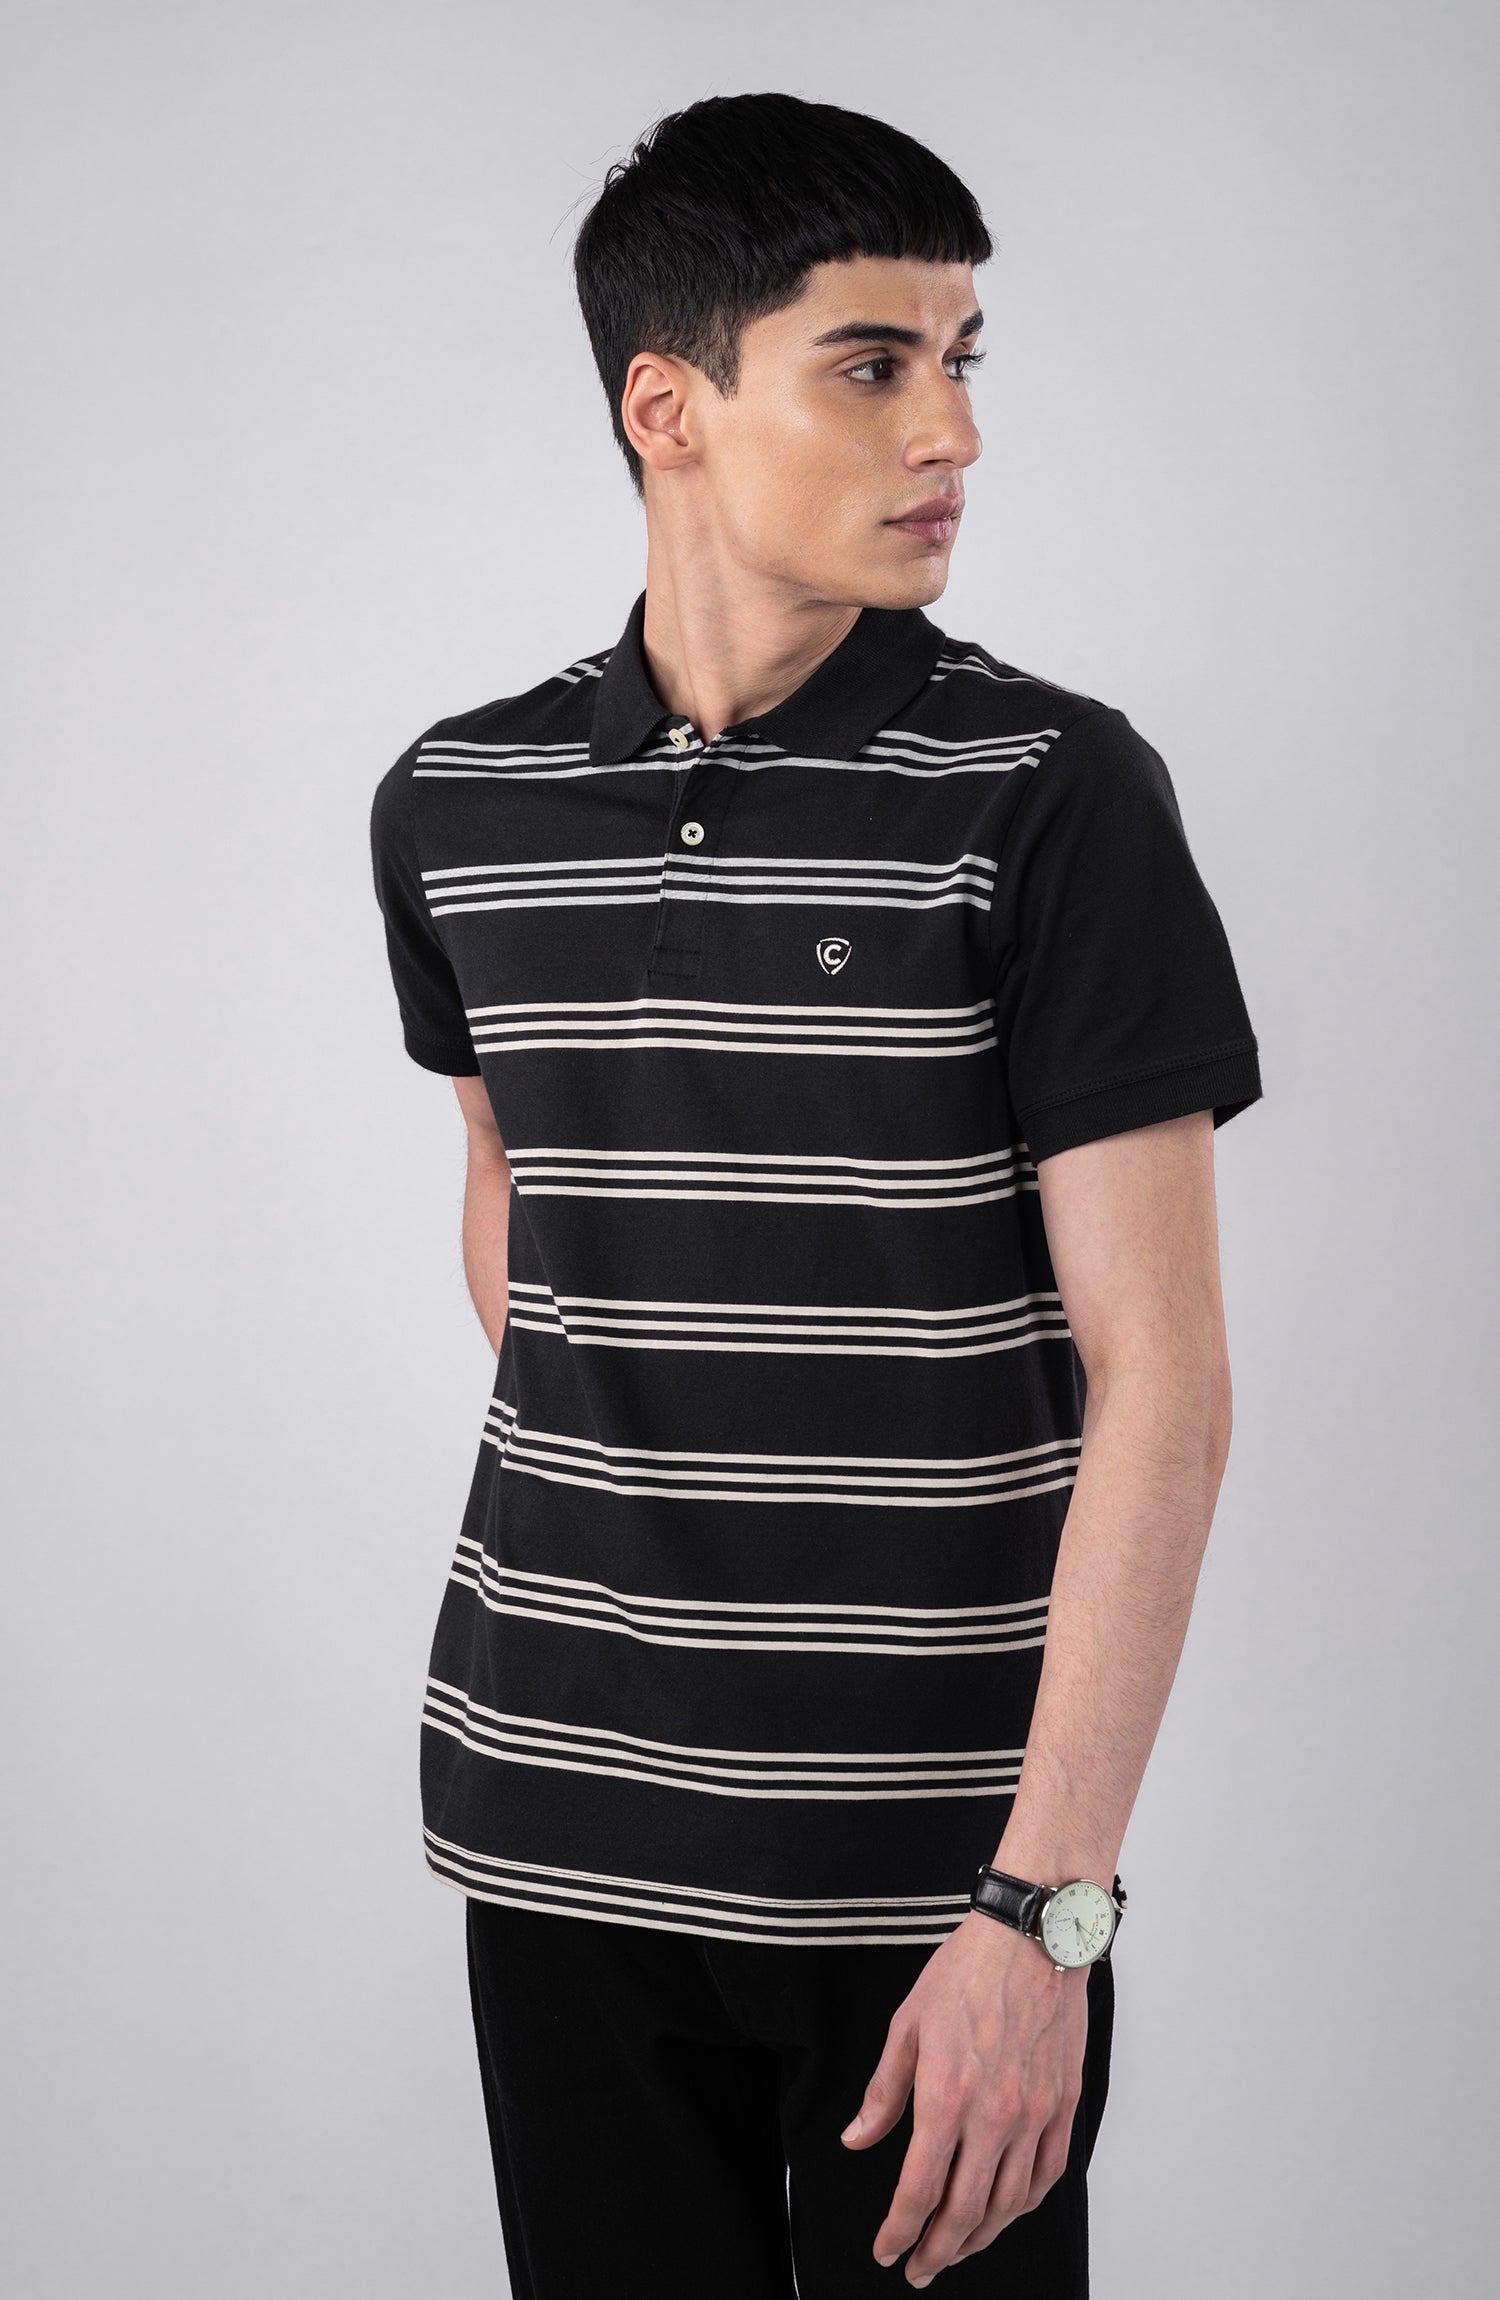 Black Polo Shirt With Grey Stripes – Cambridge Shop